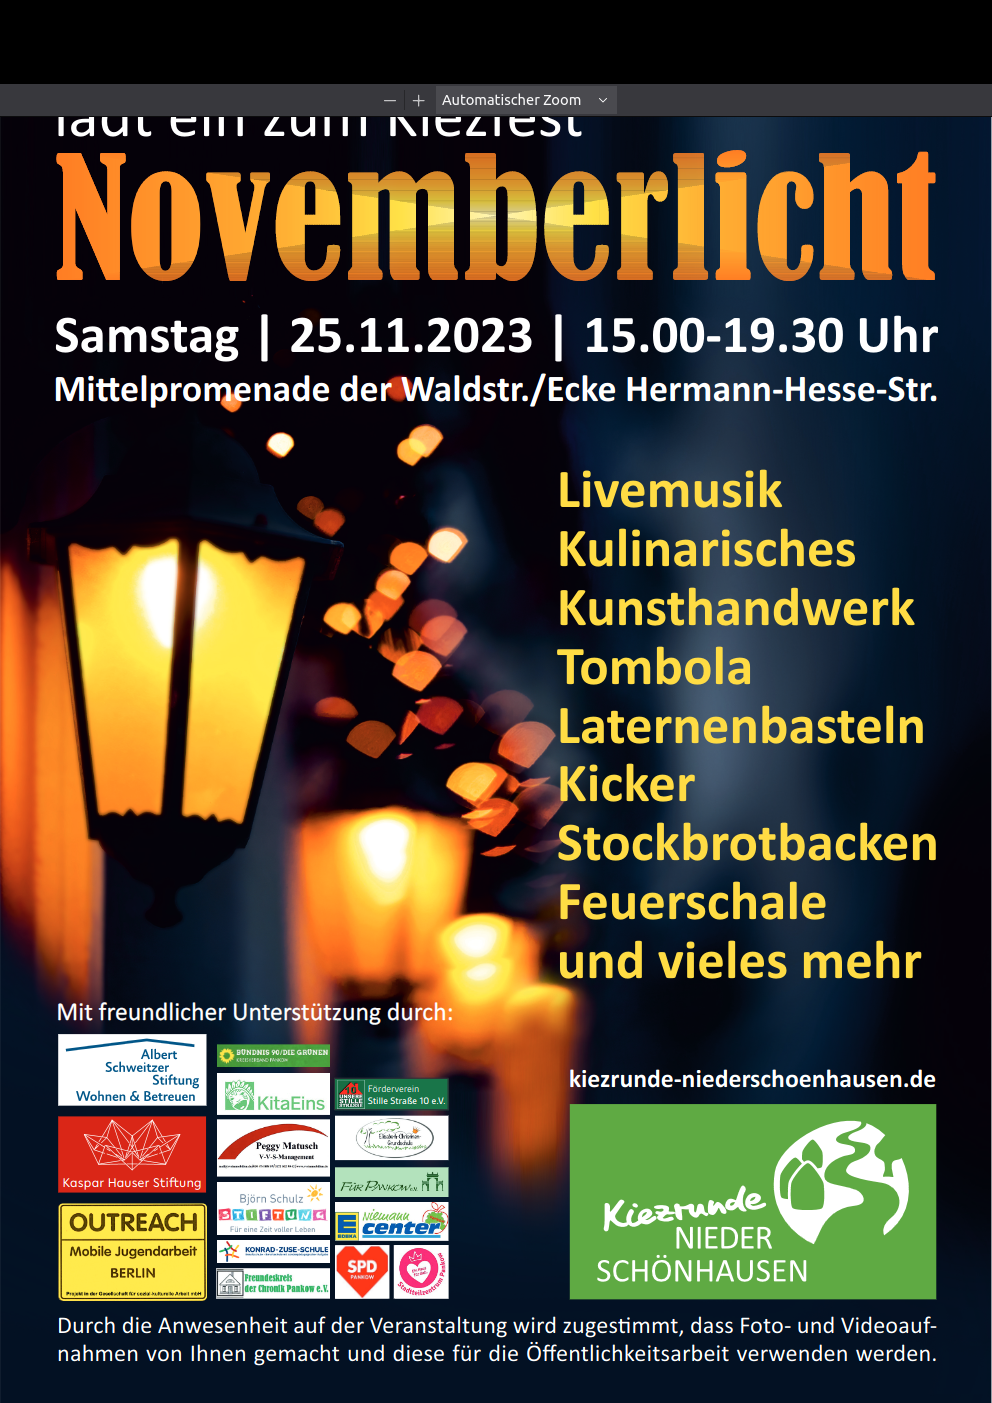 Plakat der Kiezrunde Niederschönhausen zum Kiezfest Novemberlicht am 25.11.2023 mit den Veranstaltungsinformationen. Das Plakat zeigt antike Gaslaternen in einer dunklen Straße.